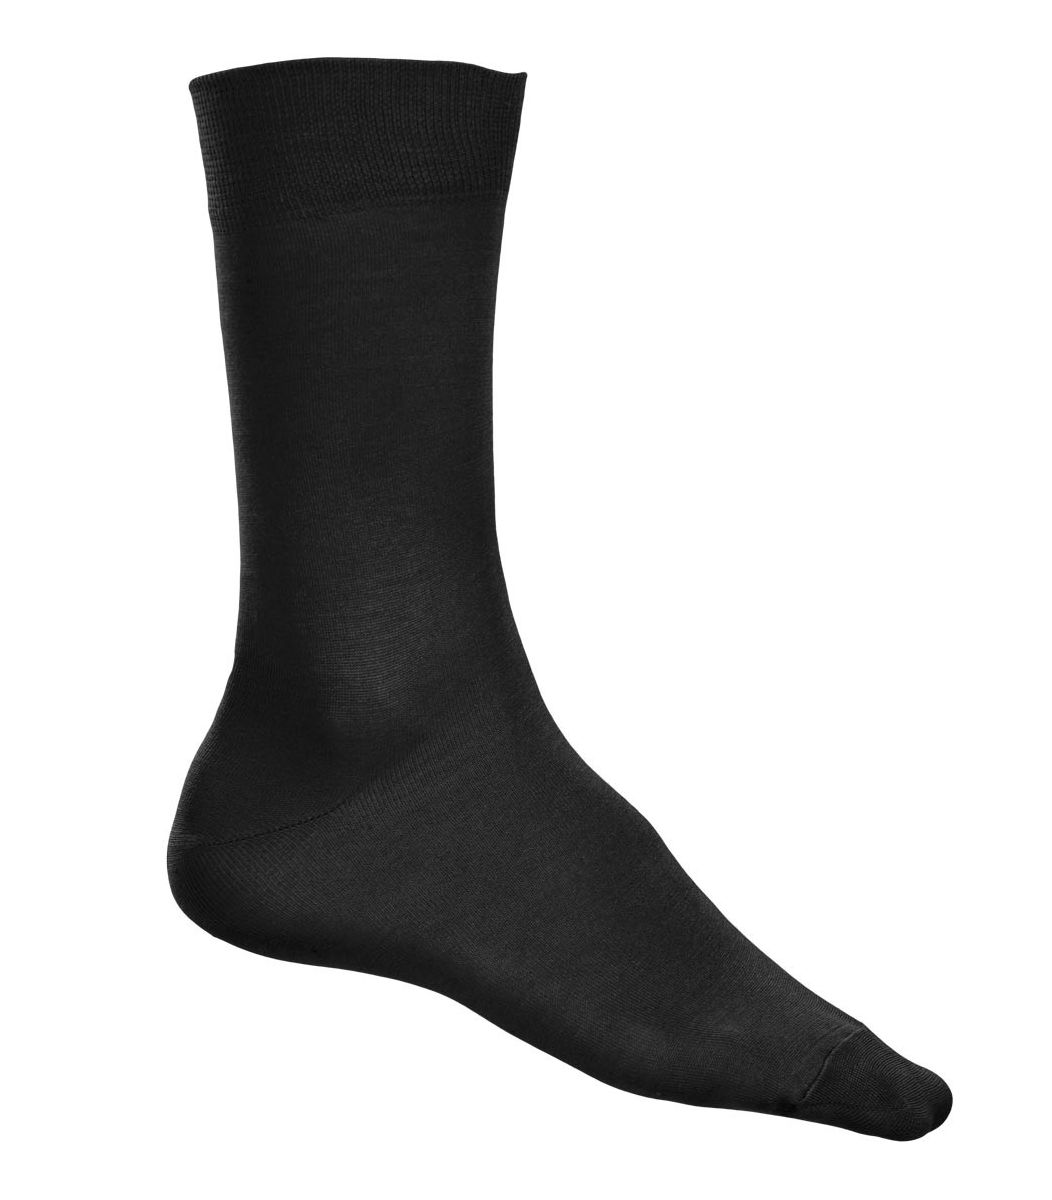 Κάλτσα γυαλιστερή Βαμβακερή, μαύρη